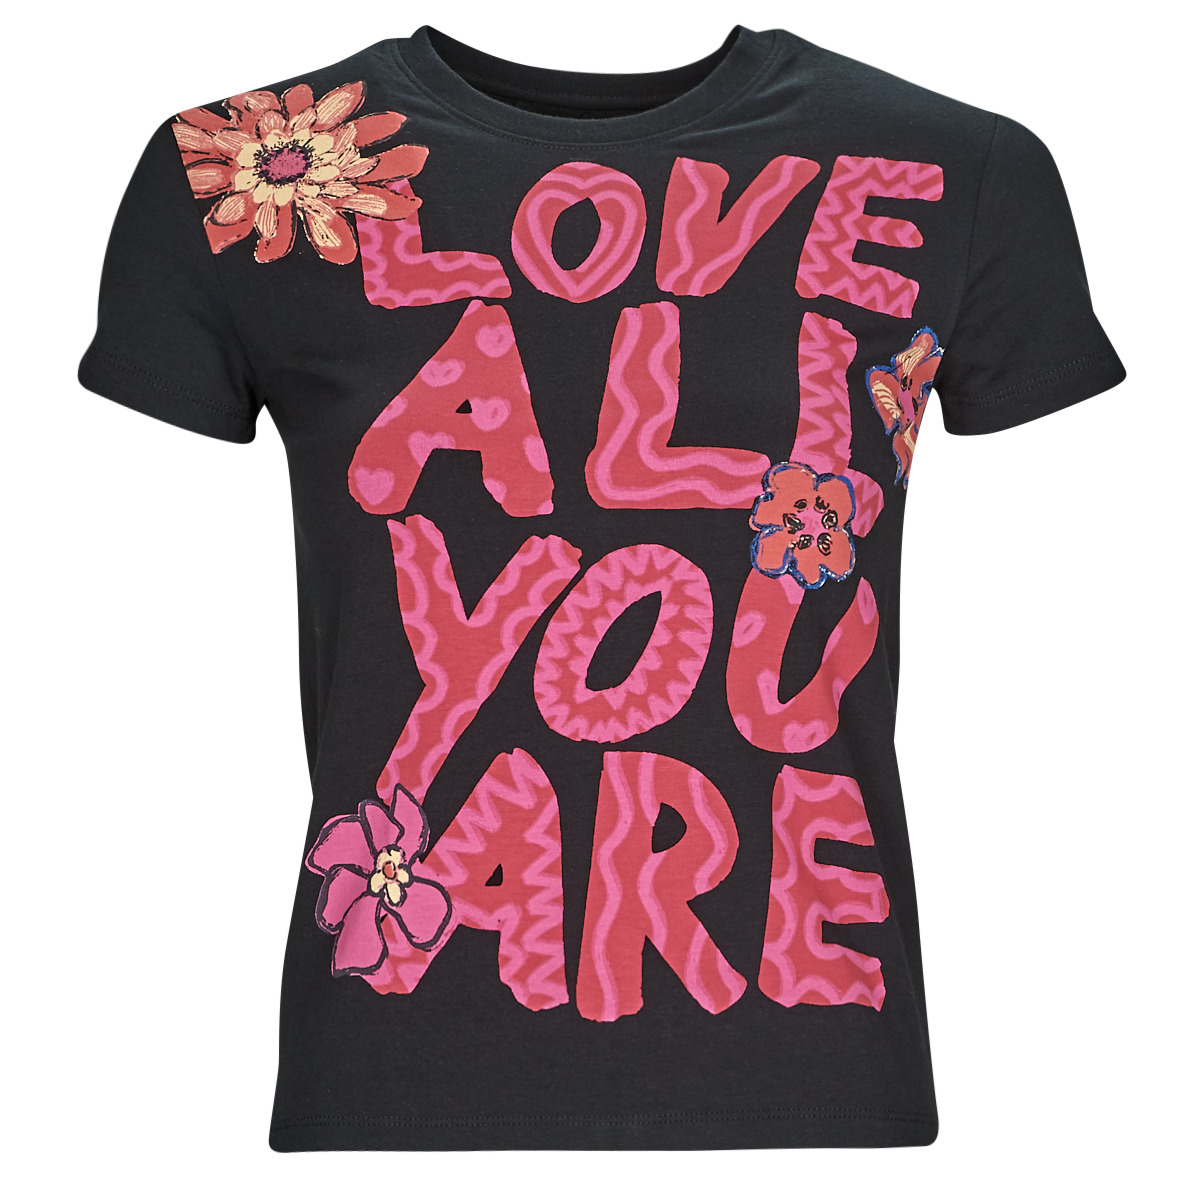 Abbigliamento Donna T-shirt maniche corte Desigual TS_LOVE ALL YOU ARE 